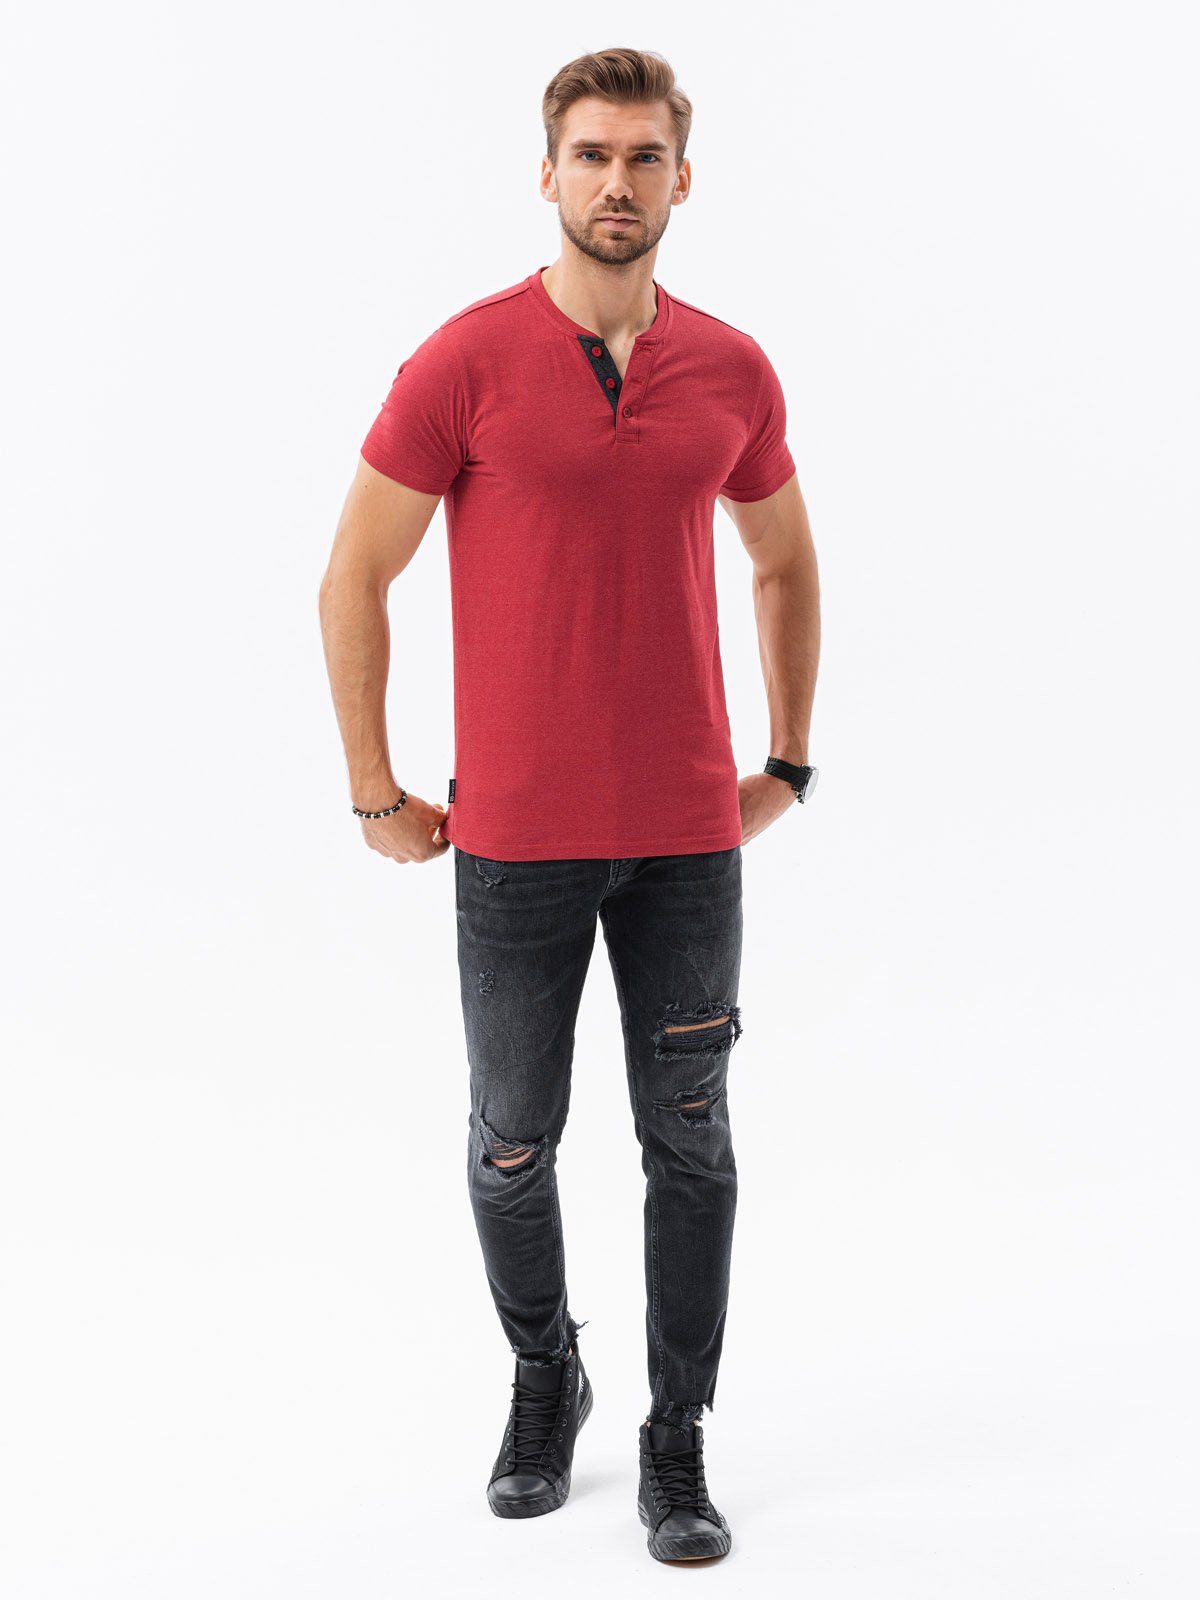 OMBRE Einfarbiges T-Shirt rot Herren-T-Shirt meliert M - S1390